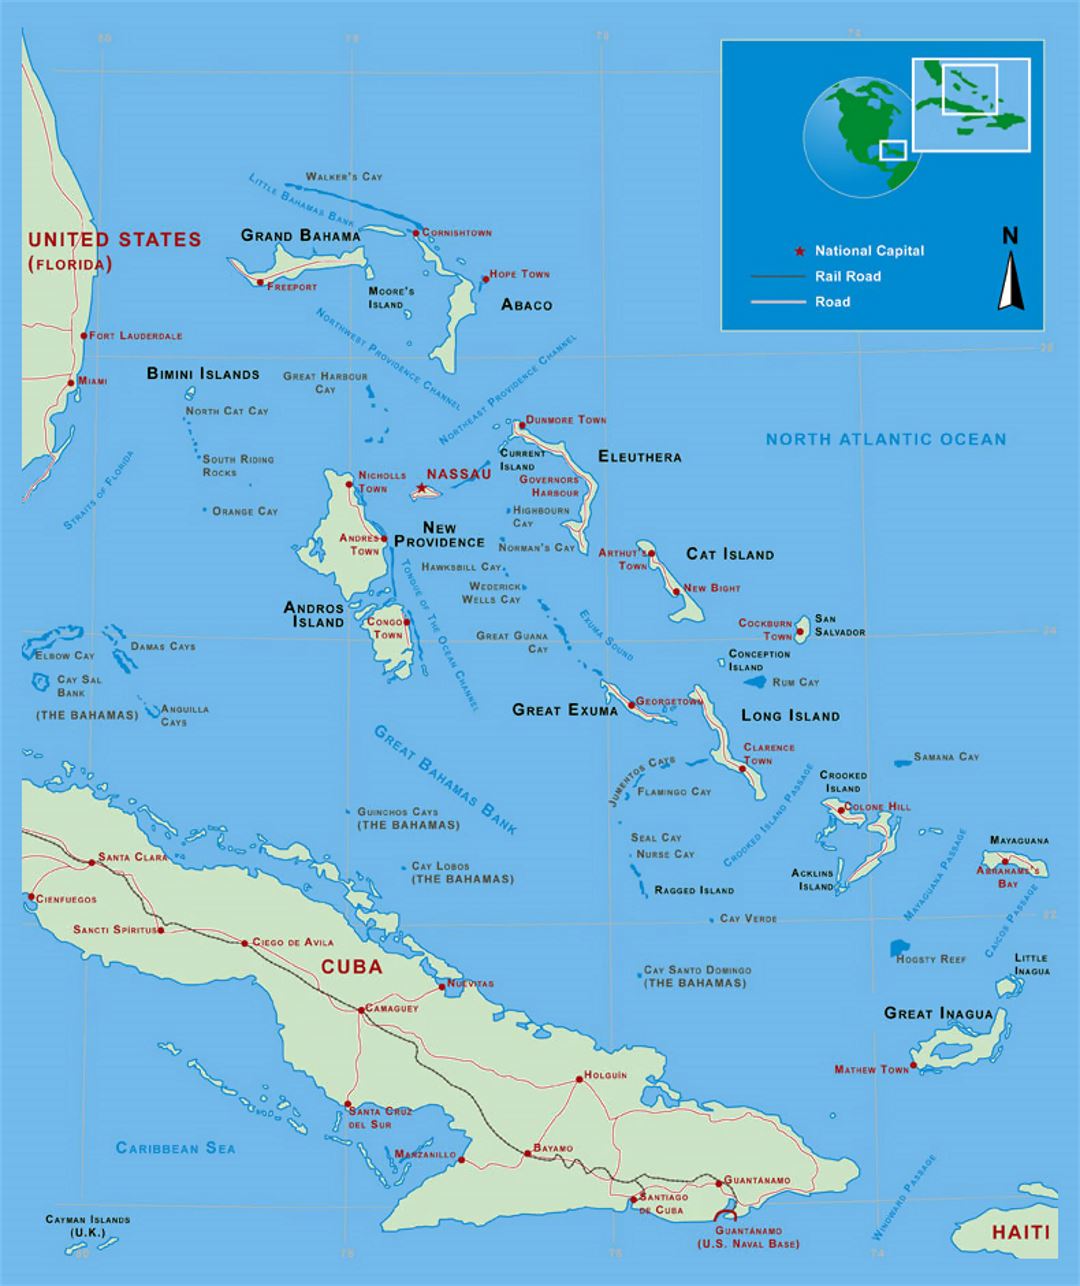 Подробная политическая карта Багамских островов с дорогами, железными дорогами и крупными городами